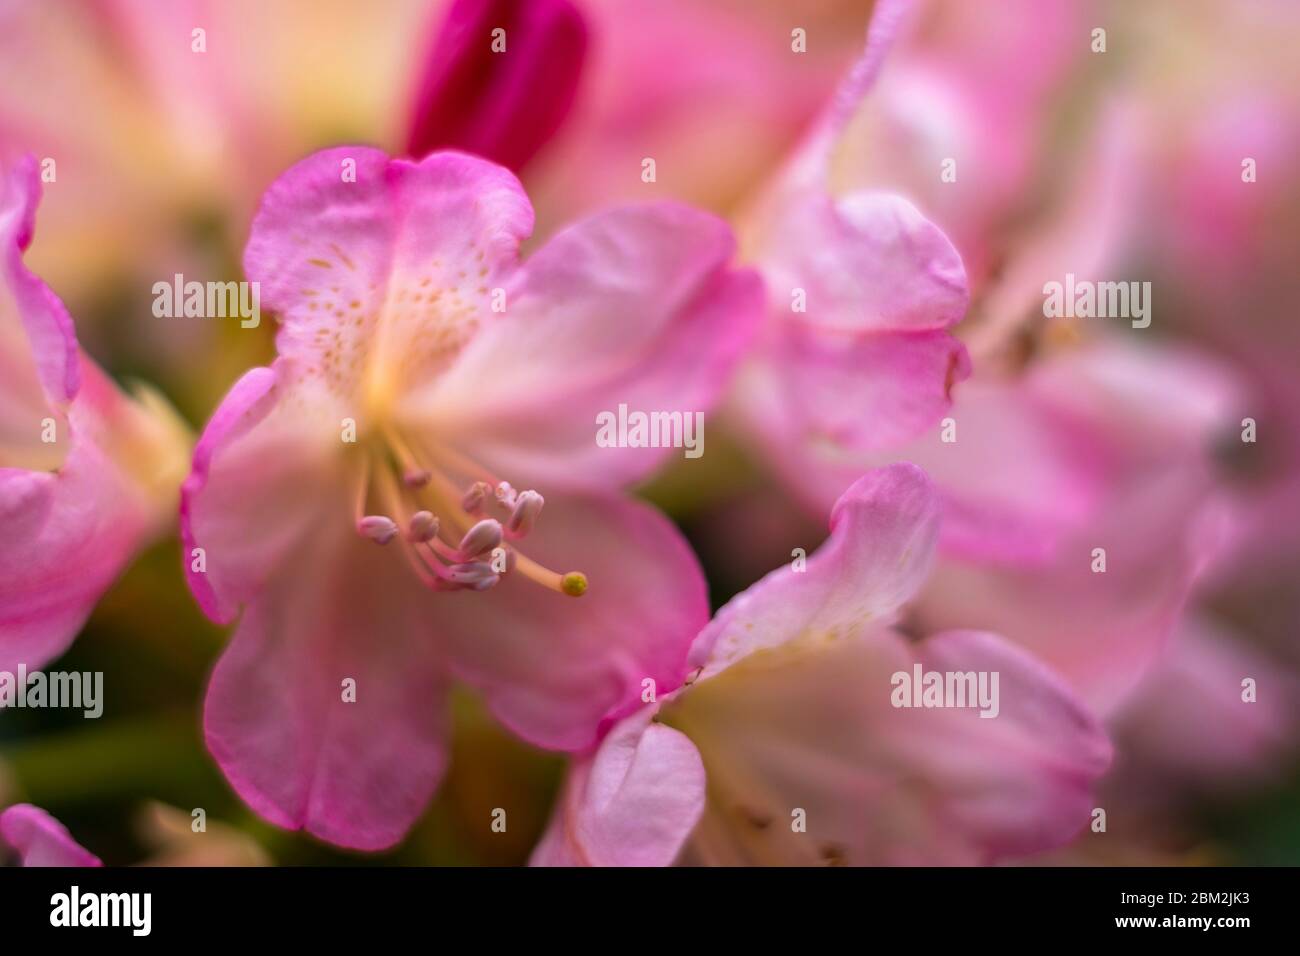 Fiori rosa di rodondendro. Messa a fuoco morbida Foto Stock